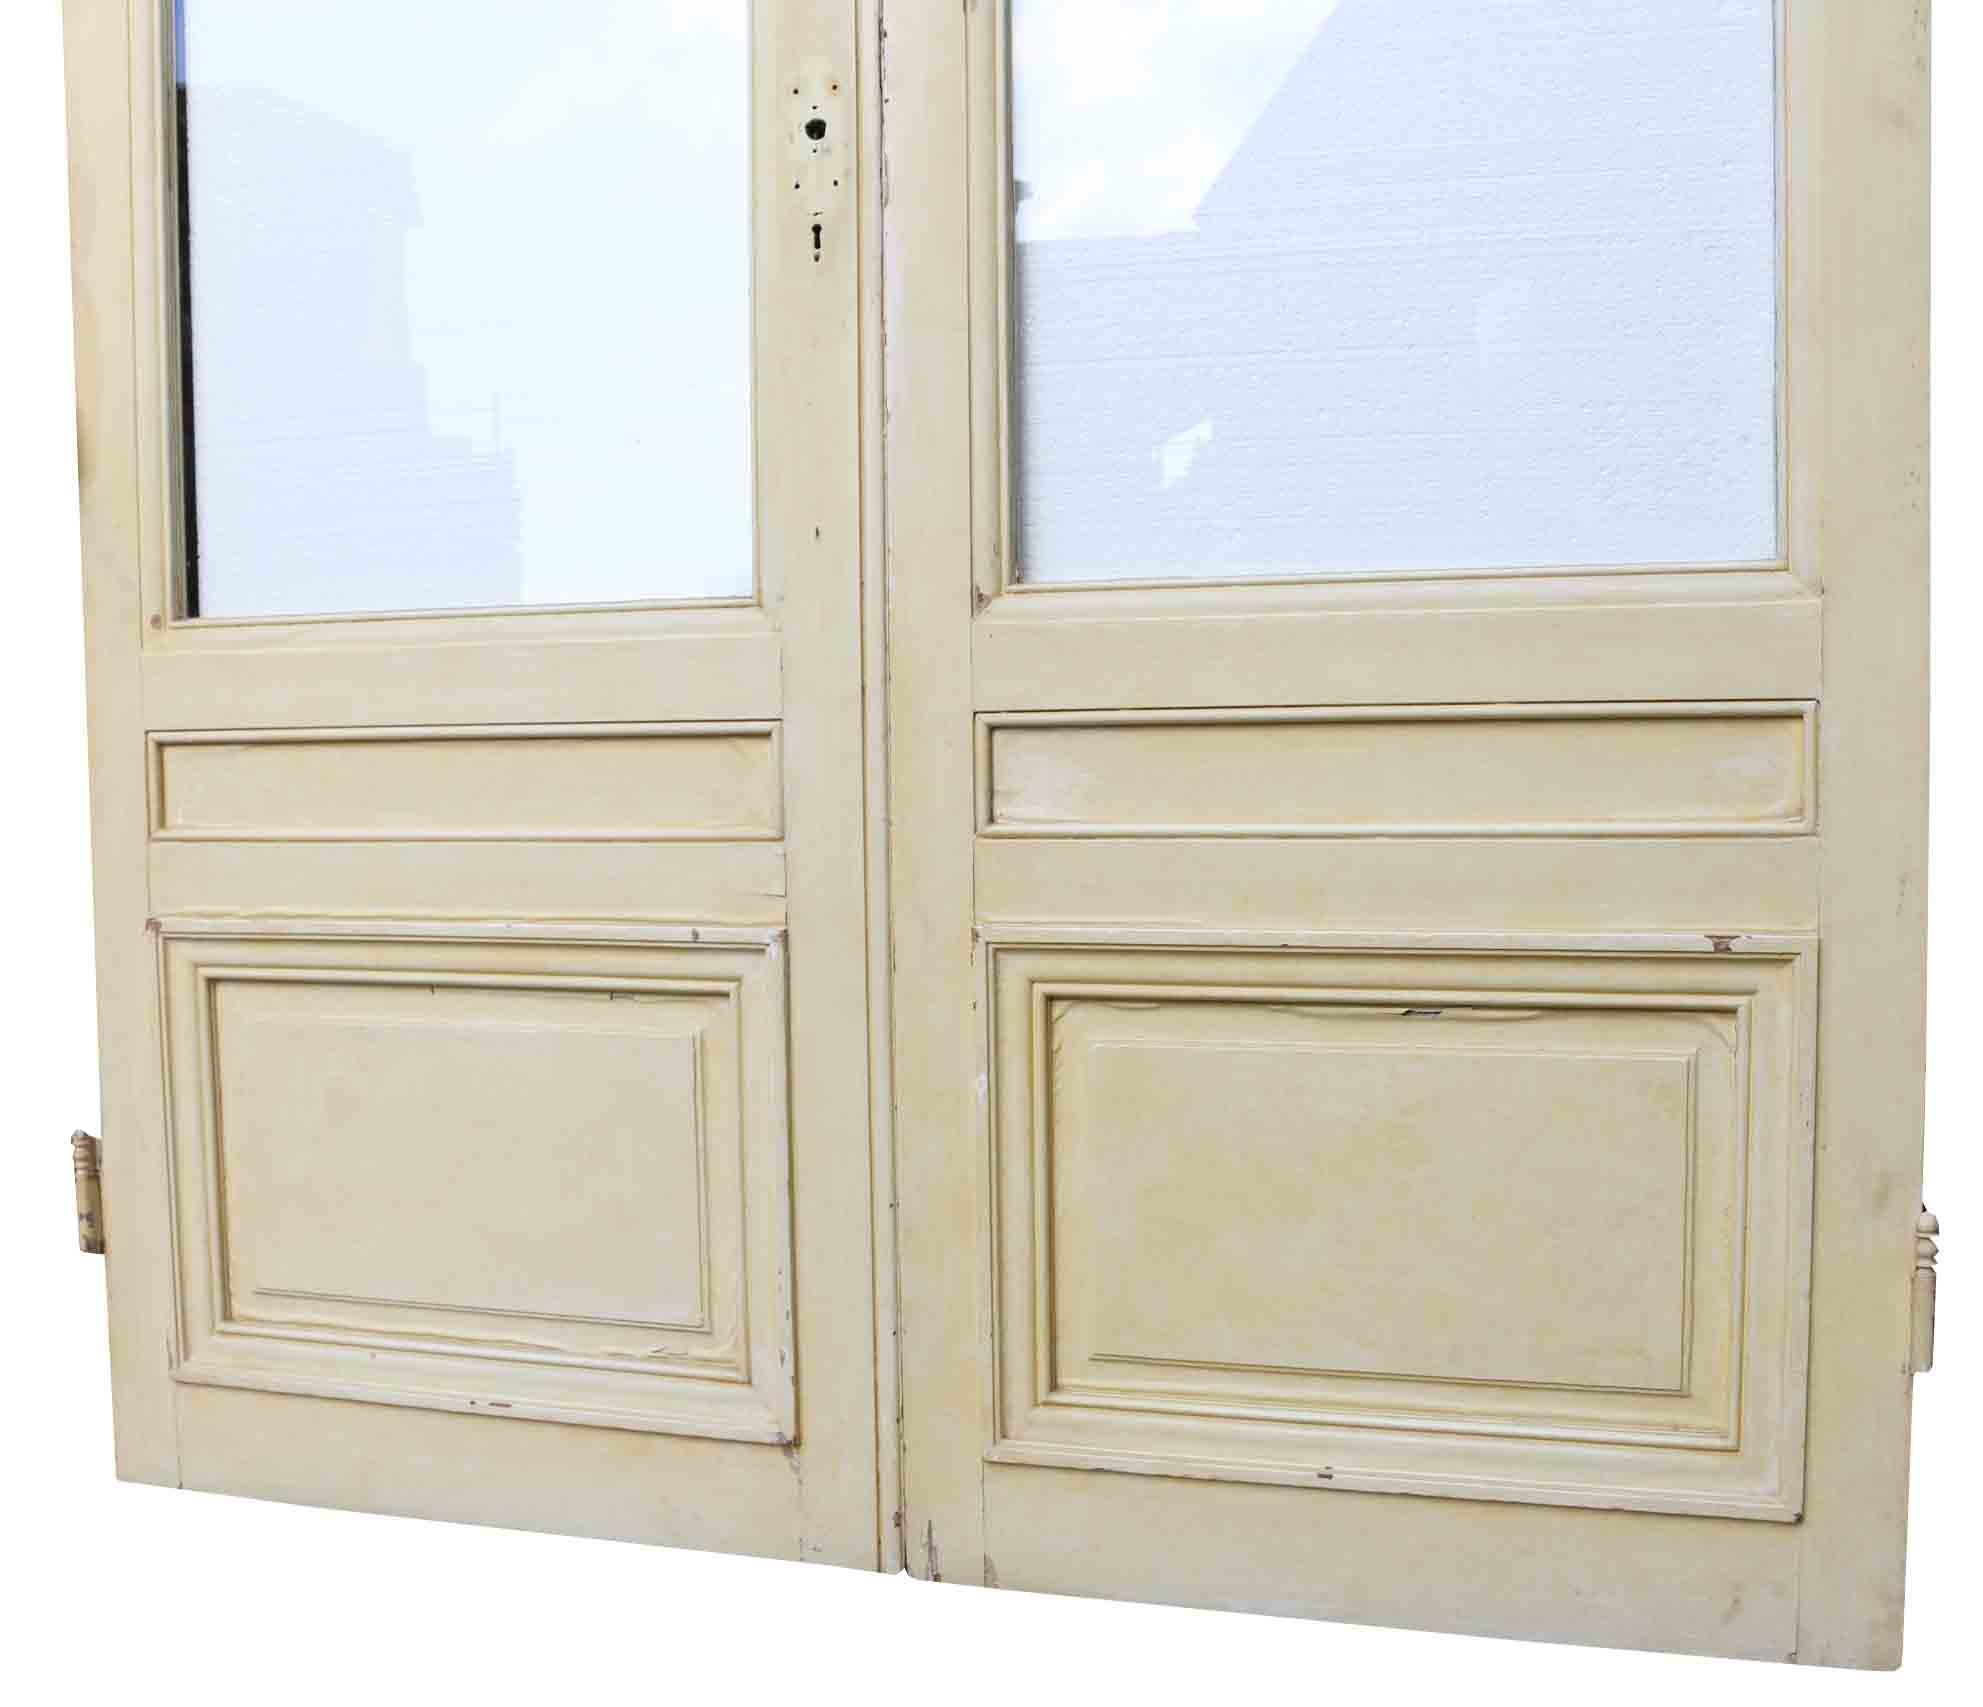 interior glazed doors